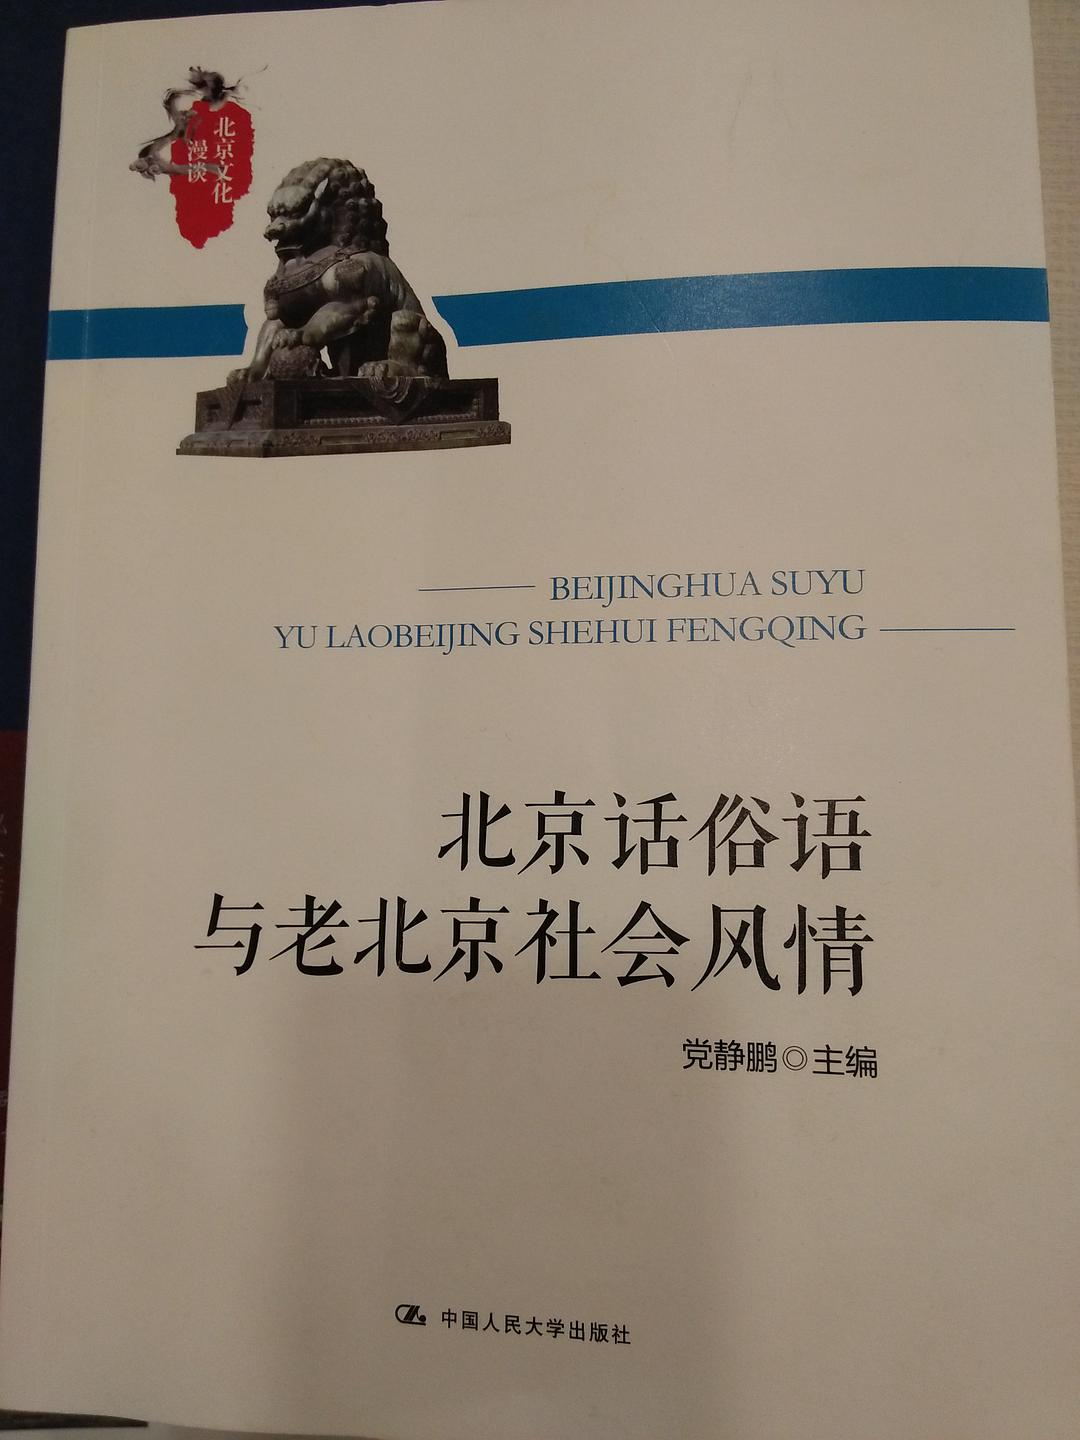 北京话俗语与老北京社会风情